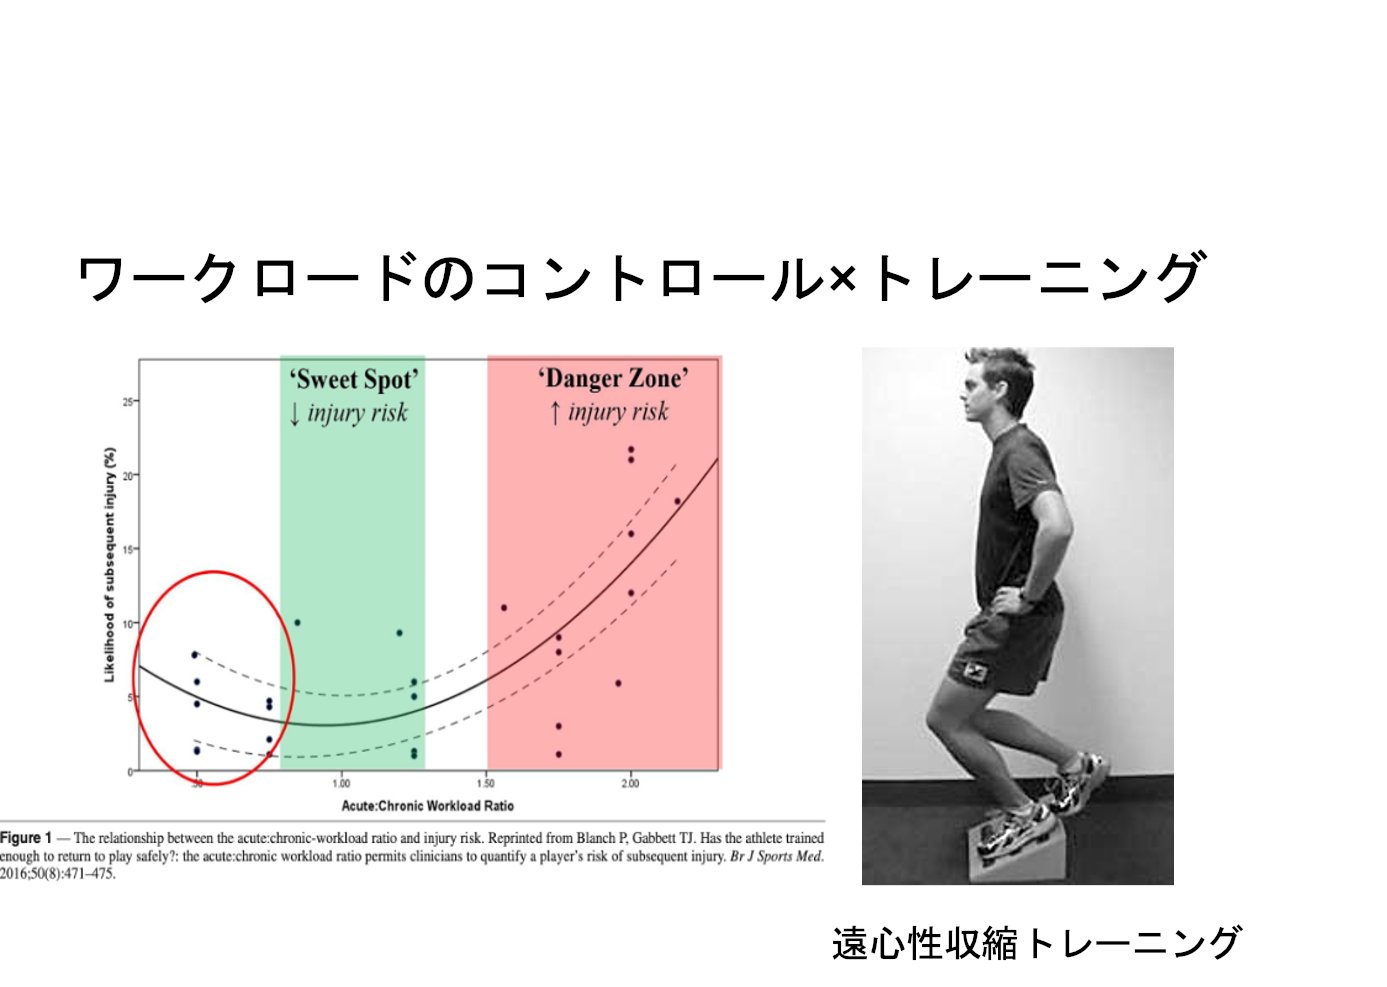 江戸川病院スポーツ医学科 ジャンパー膝に代表される 慢性膝障害のリハビリは 練習やトレーニングを外れずにワークロードをコントロールし 遠心性収縮などで適切な負荷を与えてあげる必要があります そのためには 指導者 ストレングスコーチとワーク